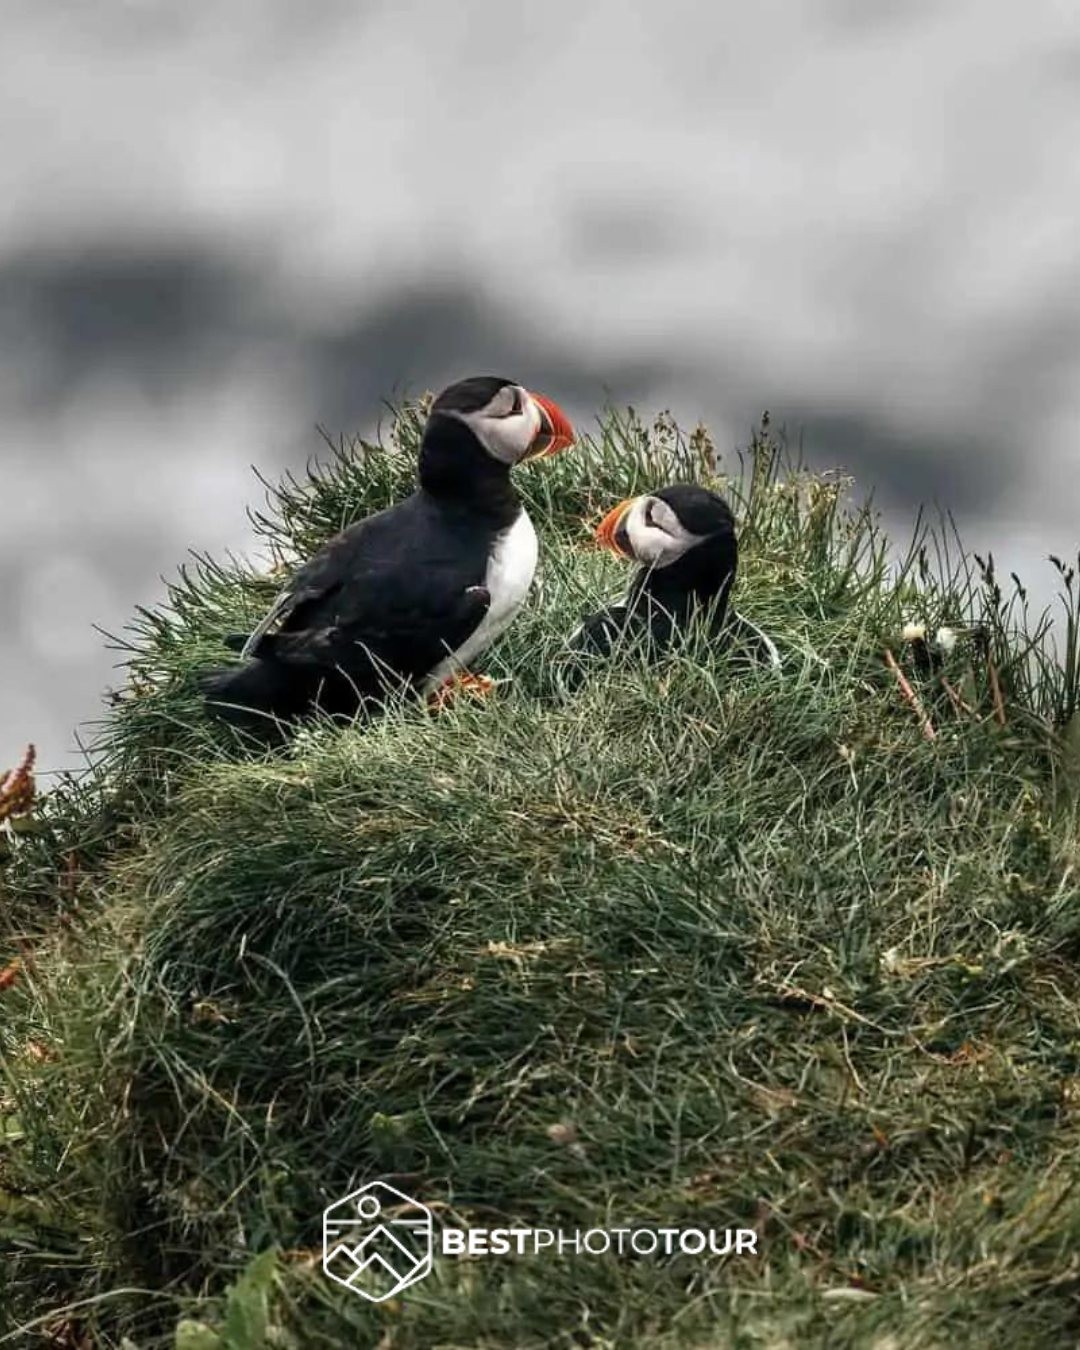 Habár Puffinokat, vagyis Lundákat összesen 5 helyen találsz a világban, mégis leginkább Izlandon jellemzőek. 

Az izlandi póni mellett, a kis tarka szárnyas a legismertebb izlandi állat. Bájos, parányi és ritka kis madár. 

Csodálatos élmény élőben is megpillantani ezeket a gyönyörű állatokat.
.
.
.
.
#bestphototour #fototura #photographytour #photographer #iceland #utazzvelünk #fotózzvelünk #jég #ice #fire #tűz #waterfall #magyarfotosok #landscapephotography #lunda